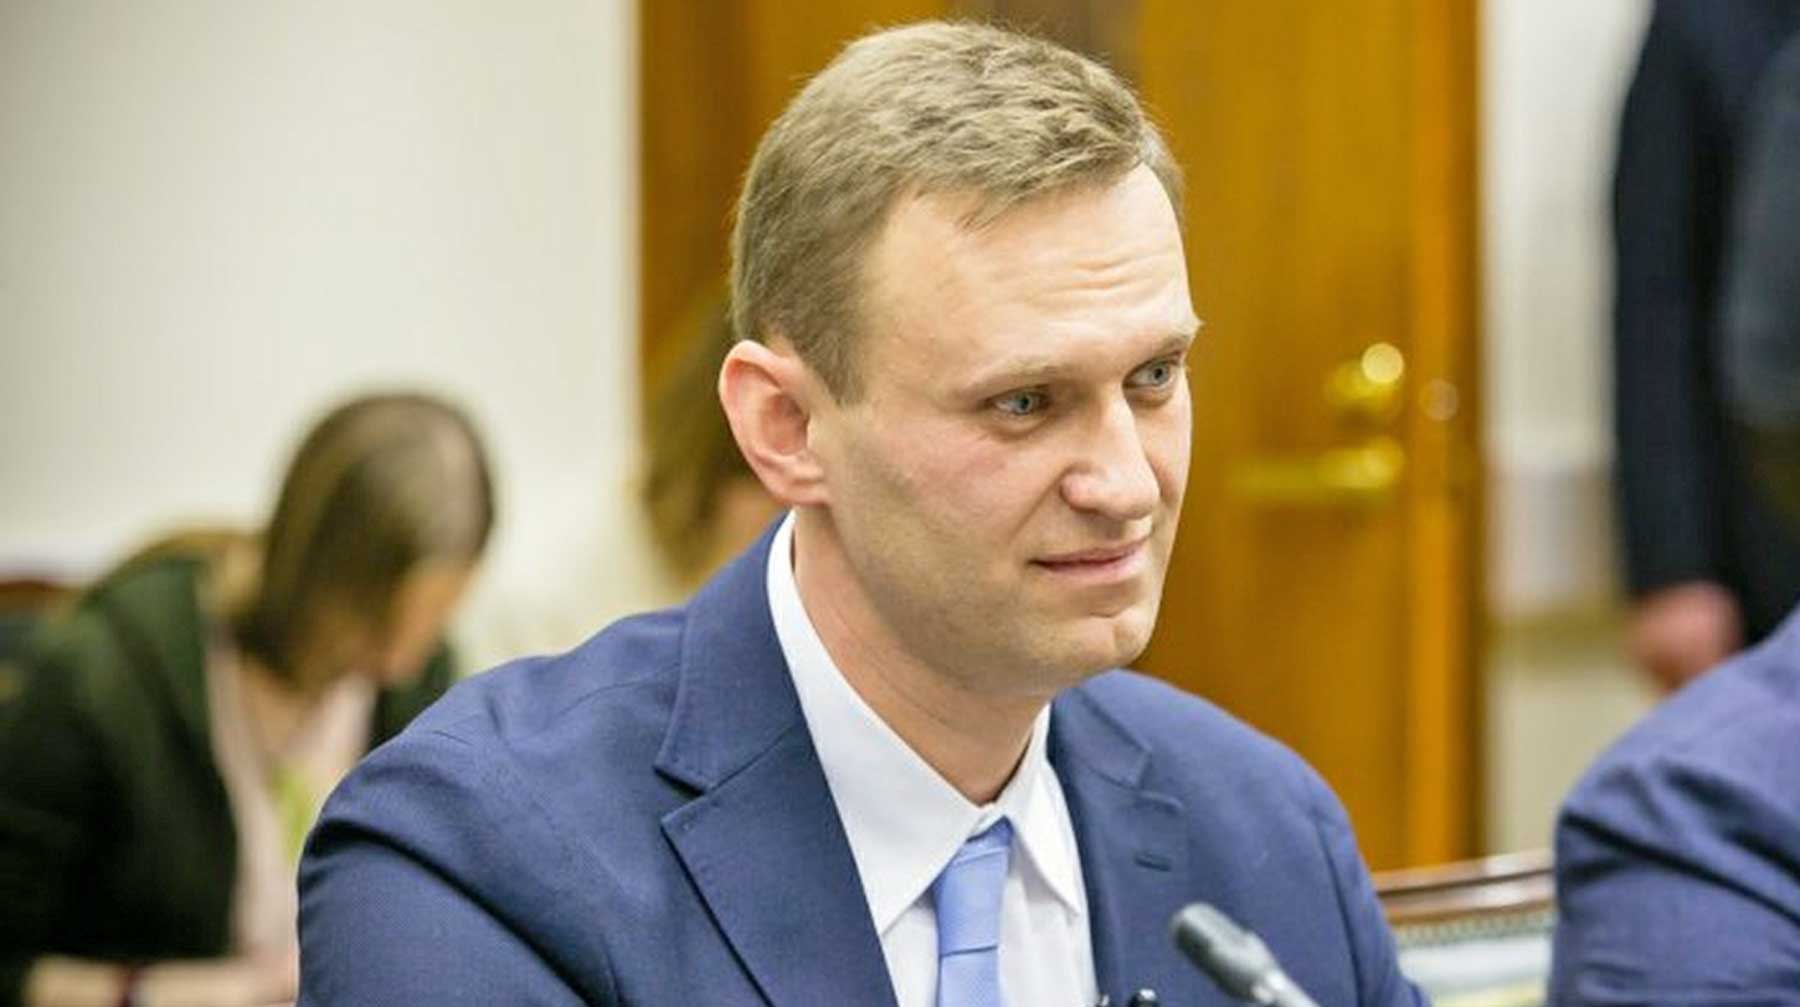 Ресторатор утверждает, что оппозиционер дал ему две недели на принятие решения Политик, глава Фонда борьбы с коррупцией (ФБК) Алексей Навальный